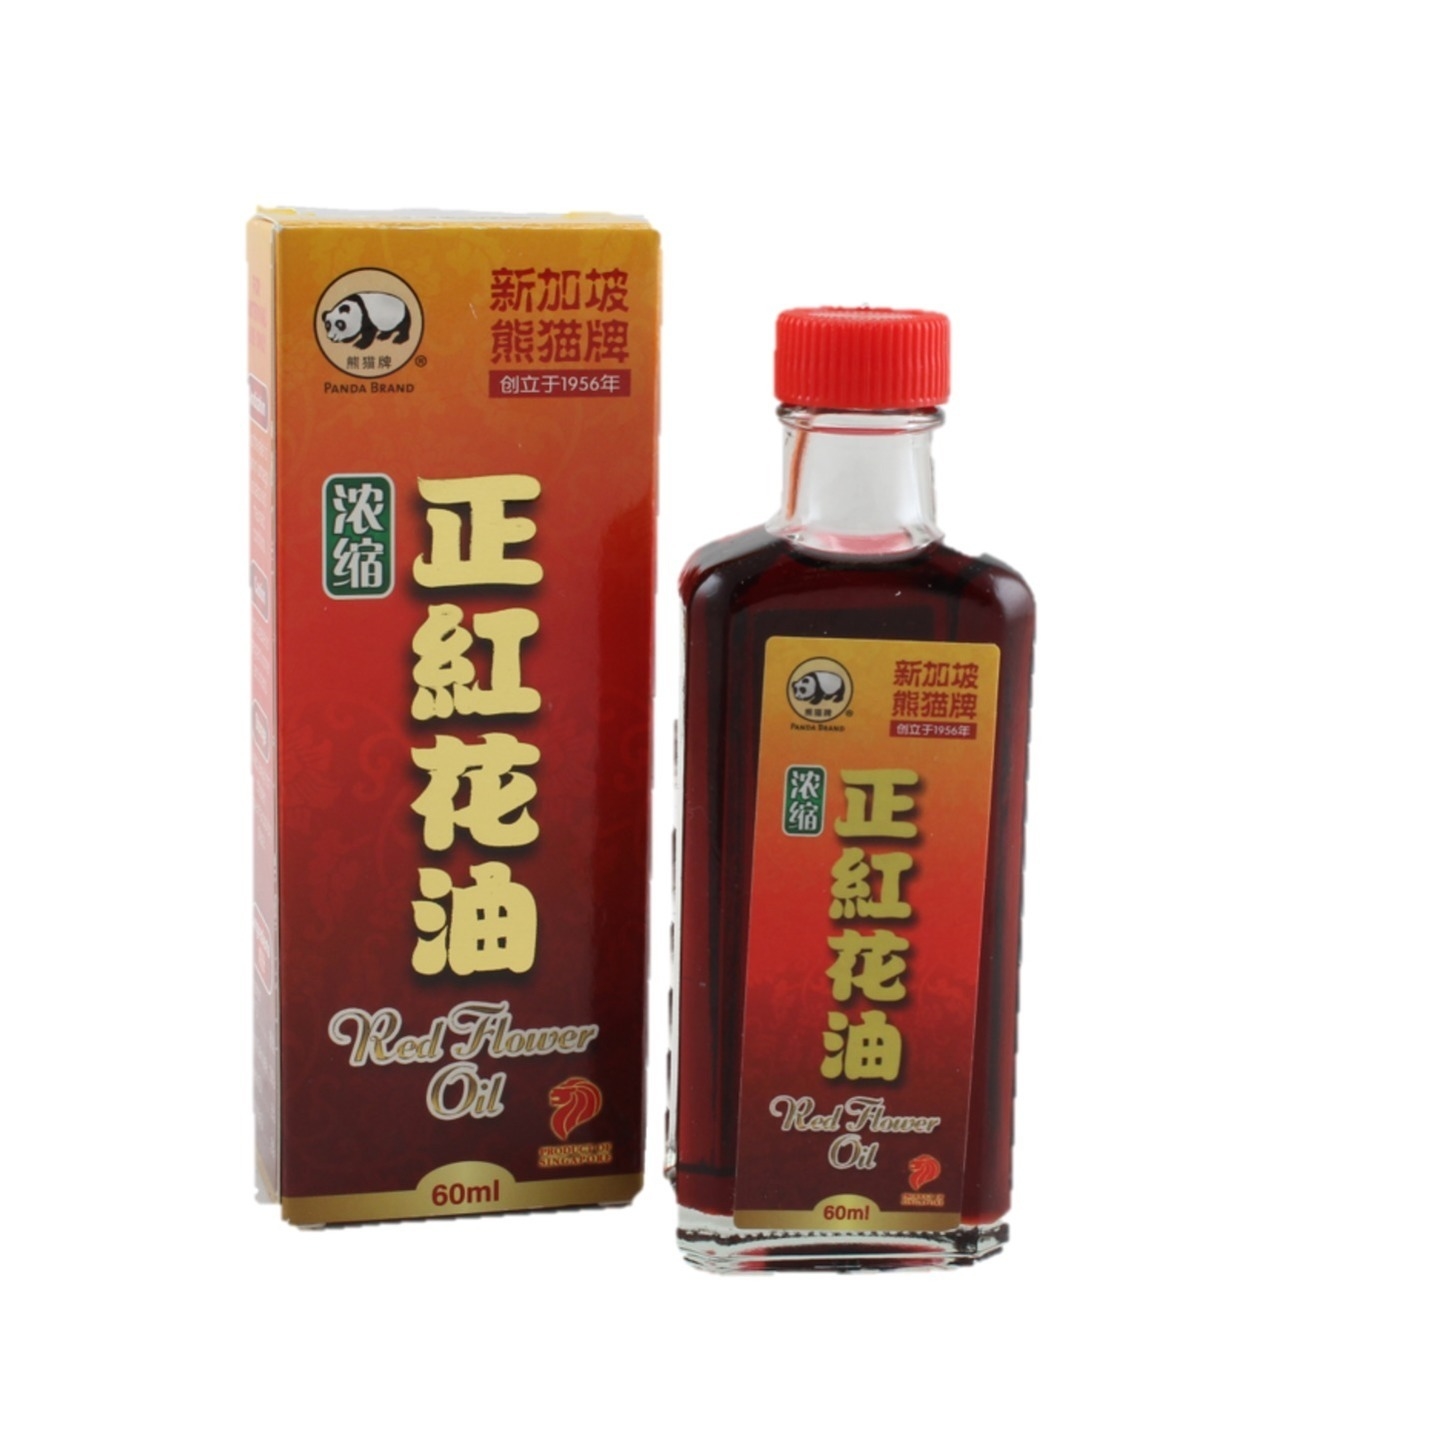 Red Flower Oil 正红花油 60ml PROMOTION FOR 12